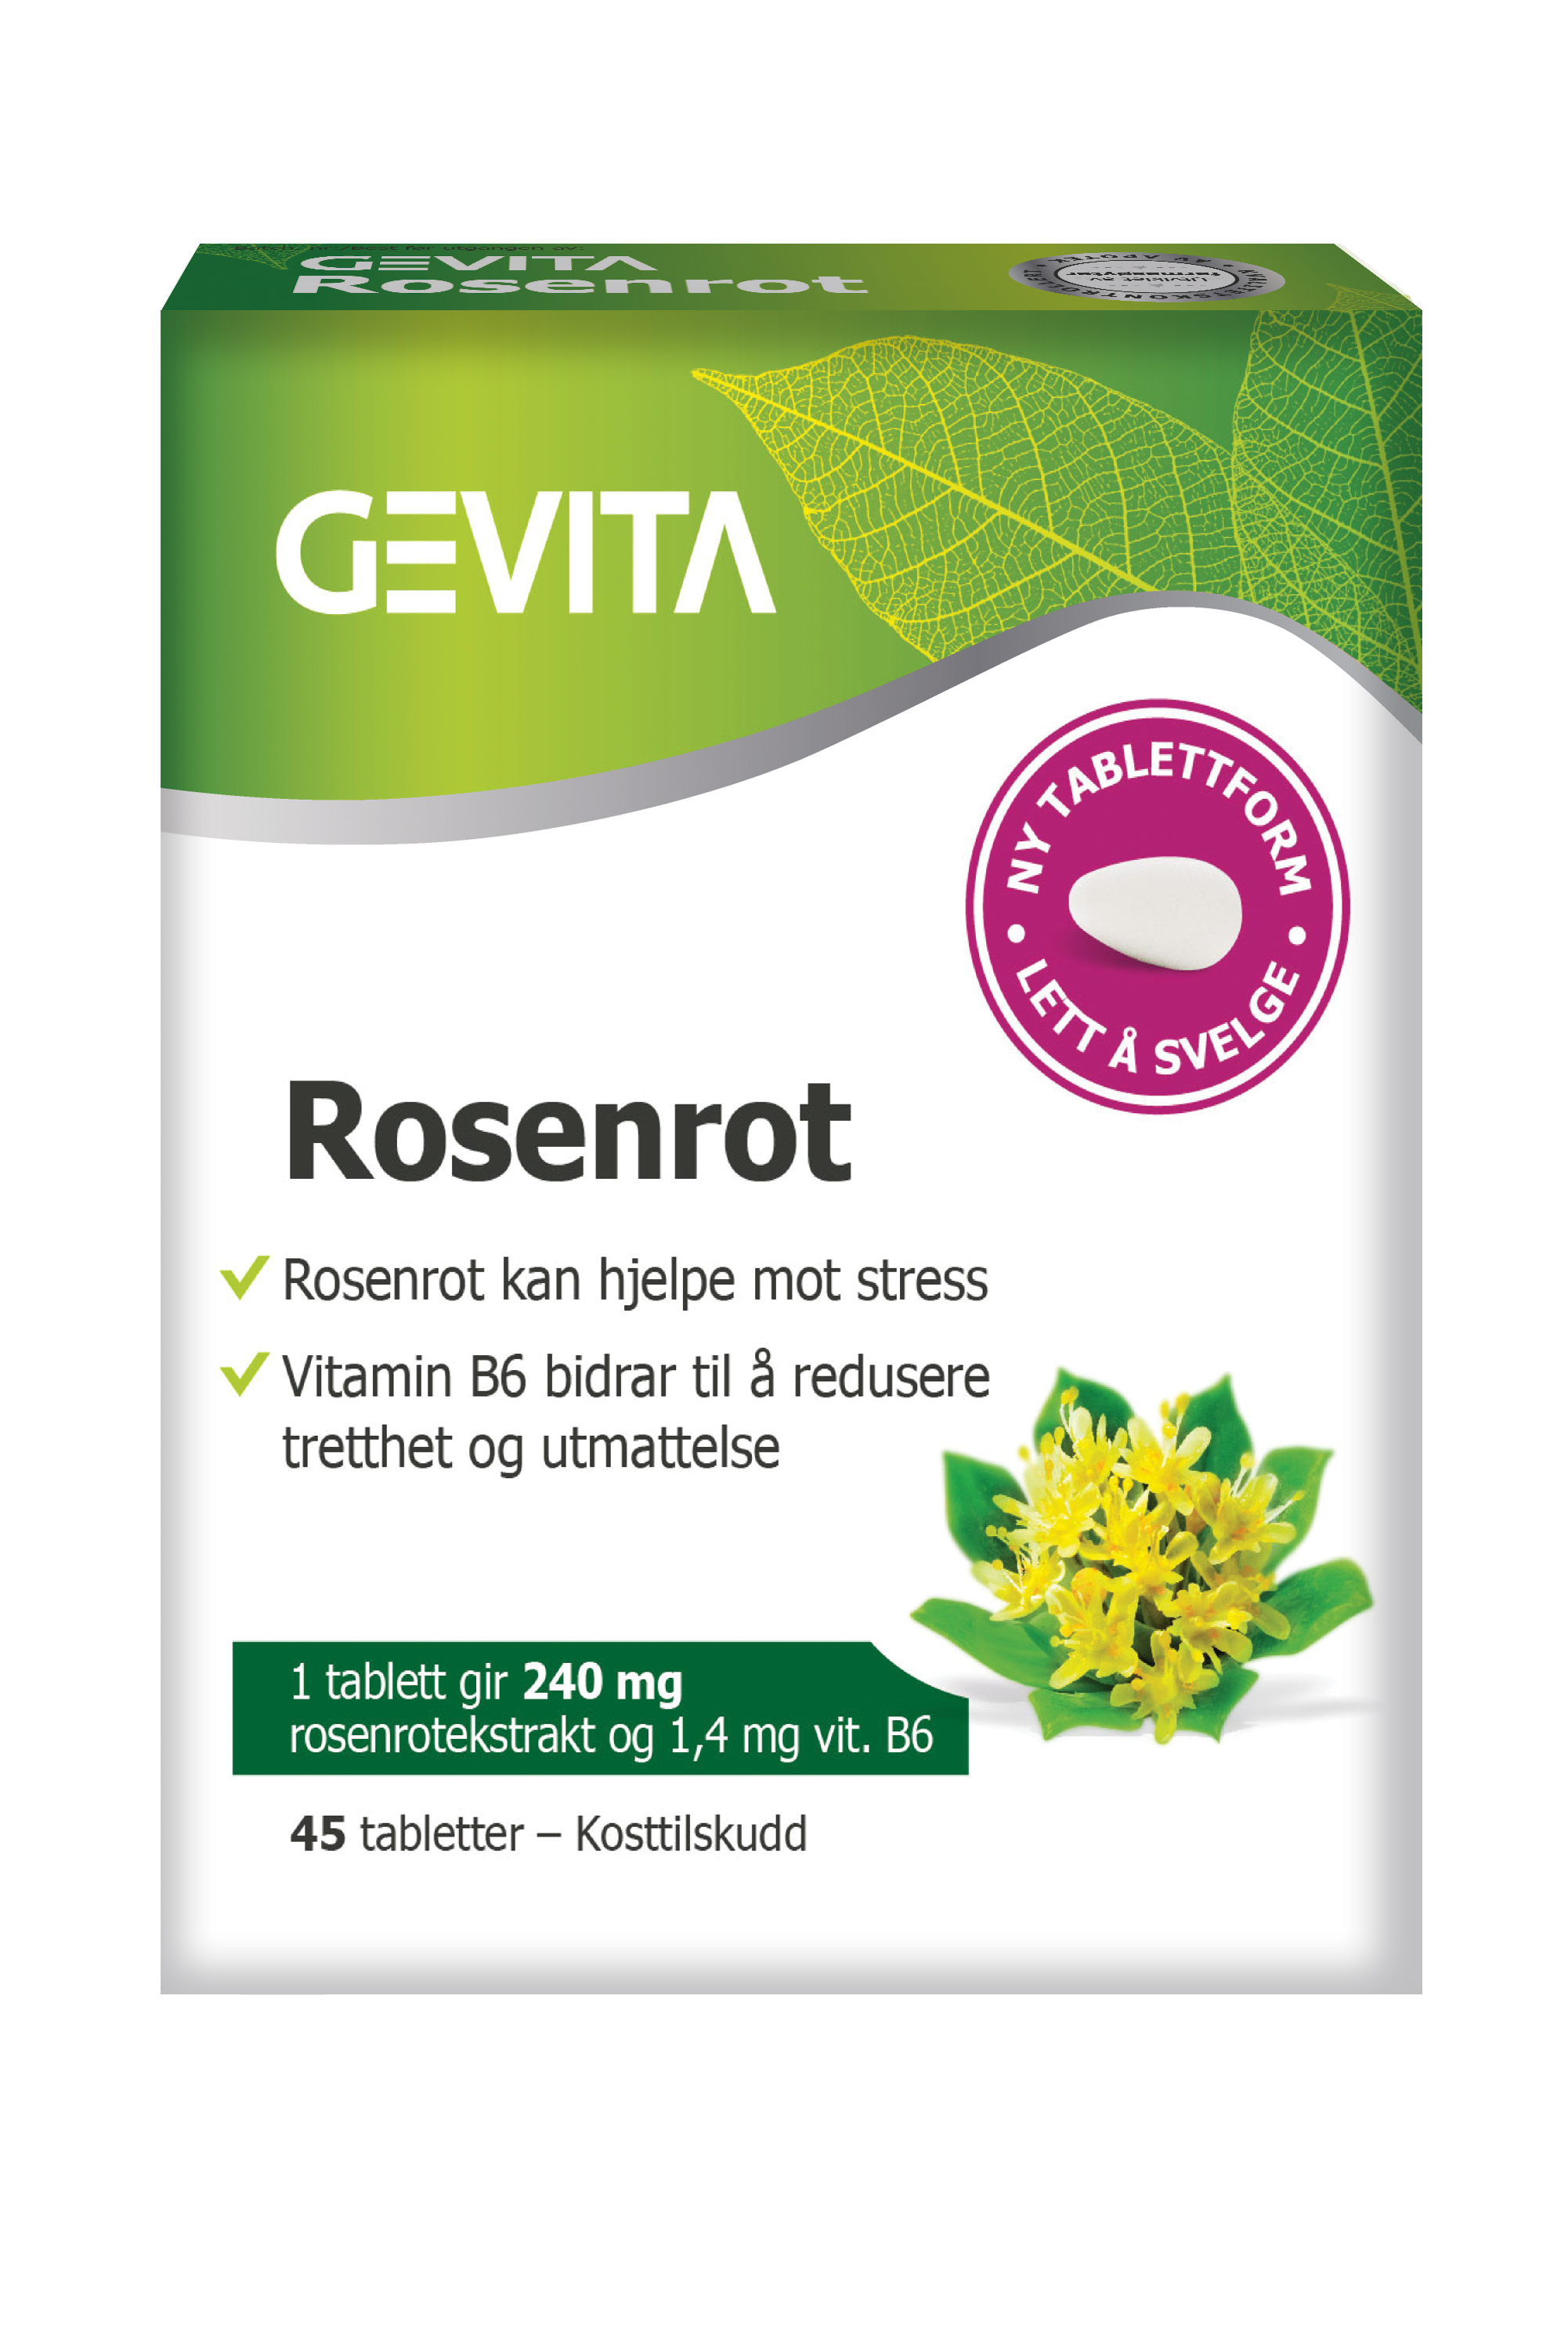 Gevita Rosenrot Tabletter, 45 tabletter